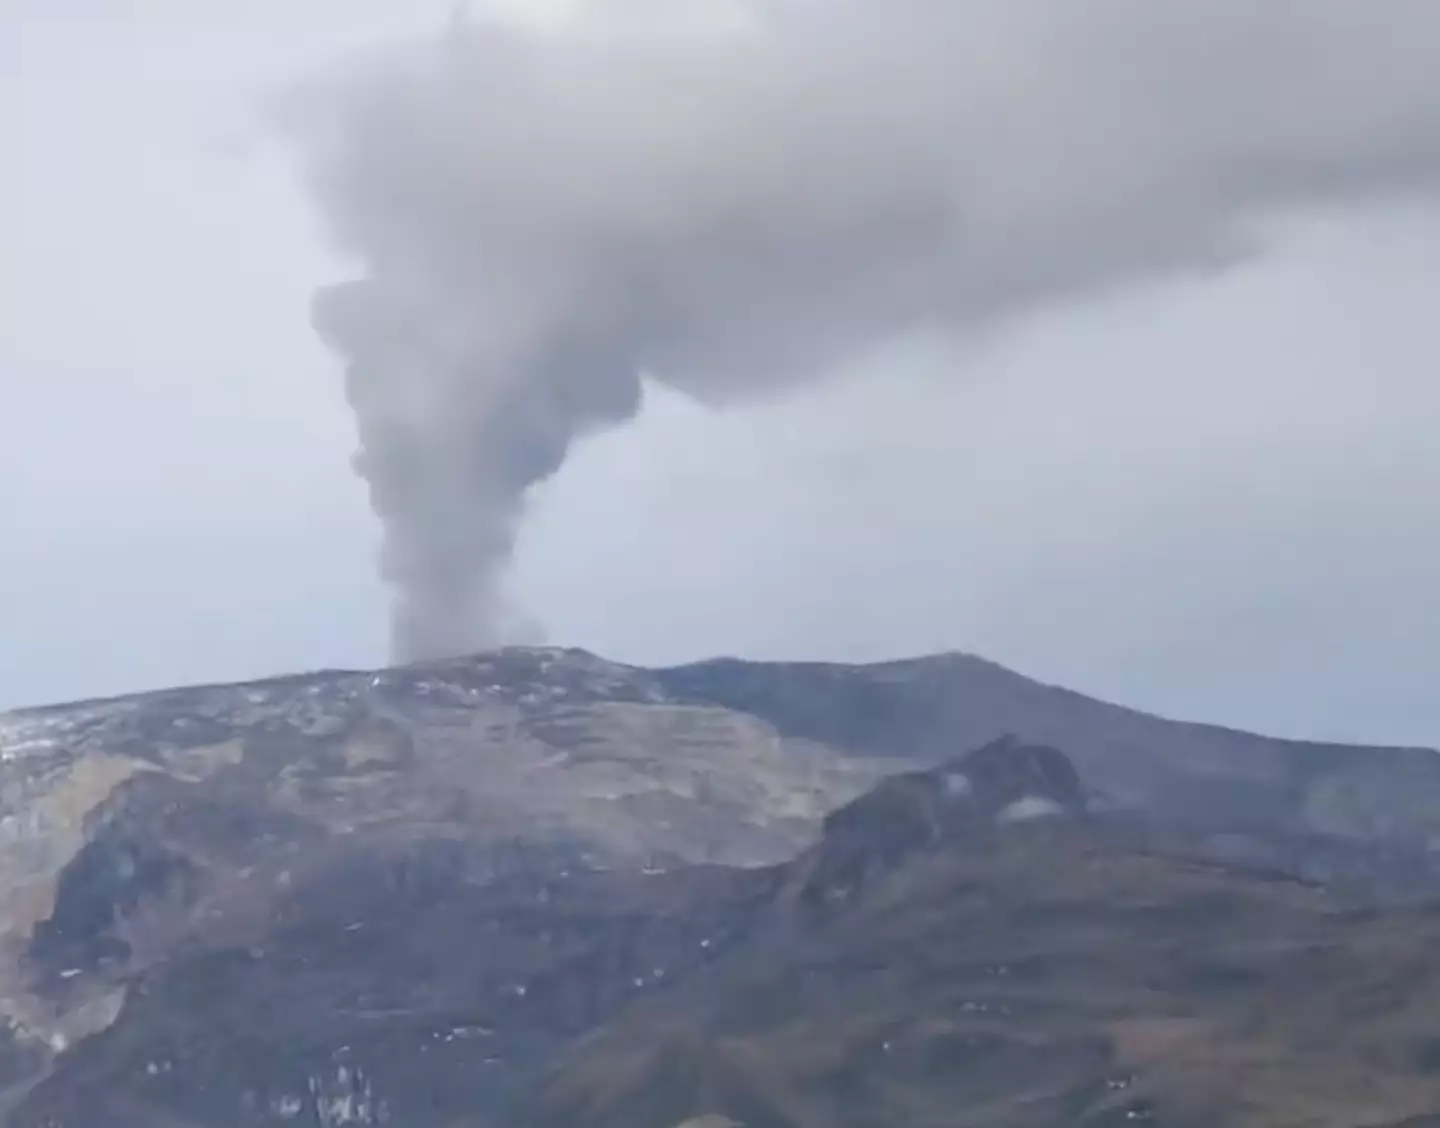 Nevado del Ruiz has reported to have increased activity.